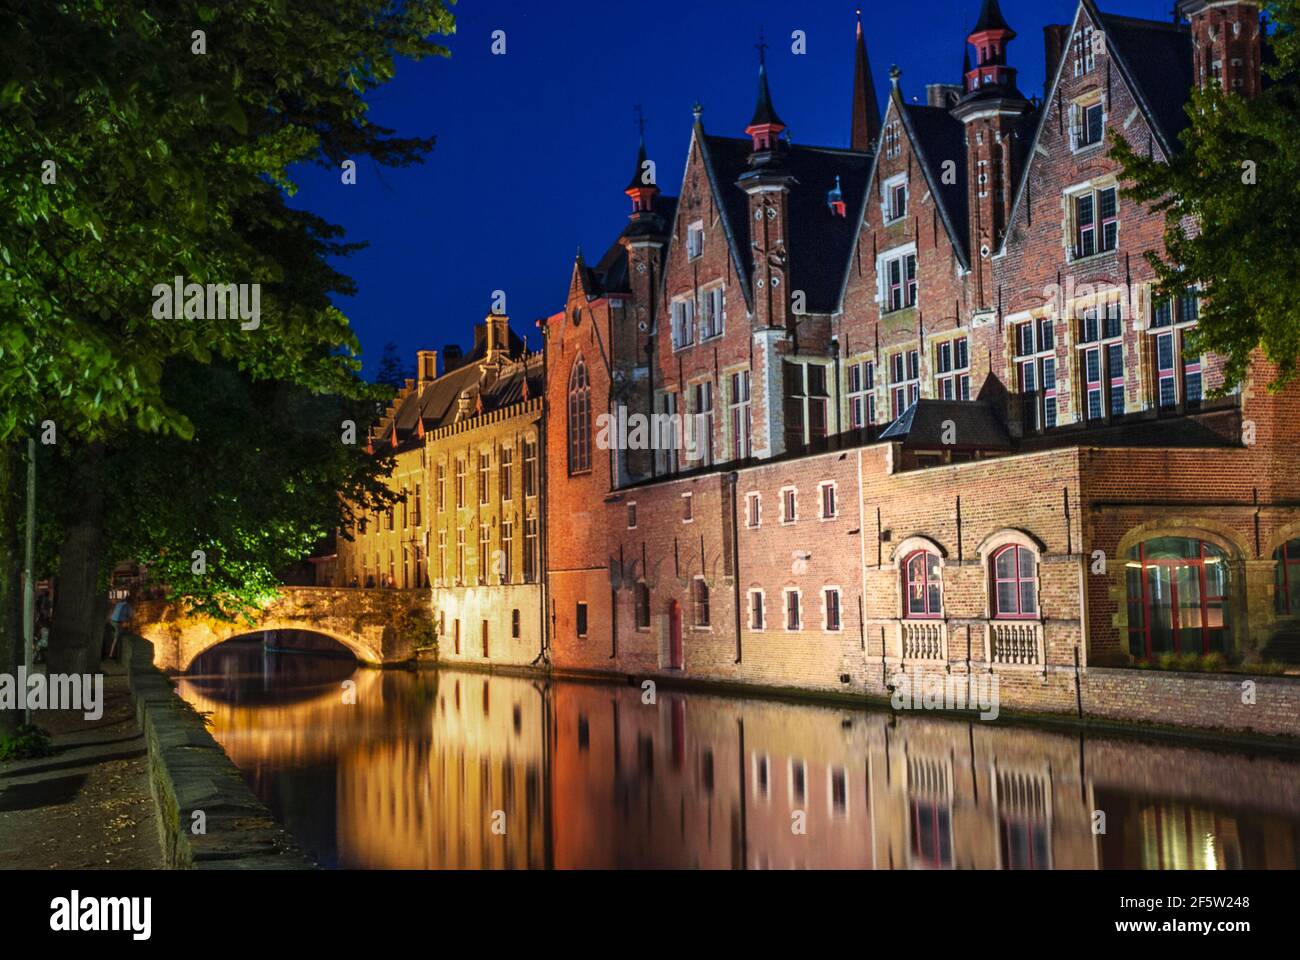 Vue sur le canal le long de Steenhouwersdijk à Bruges (Brugge) Belgique - Flandre Banque D'Images